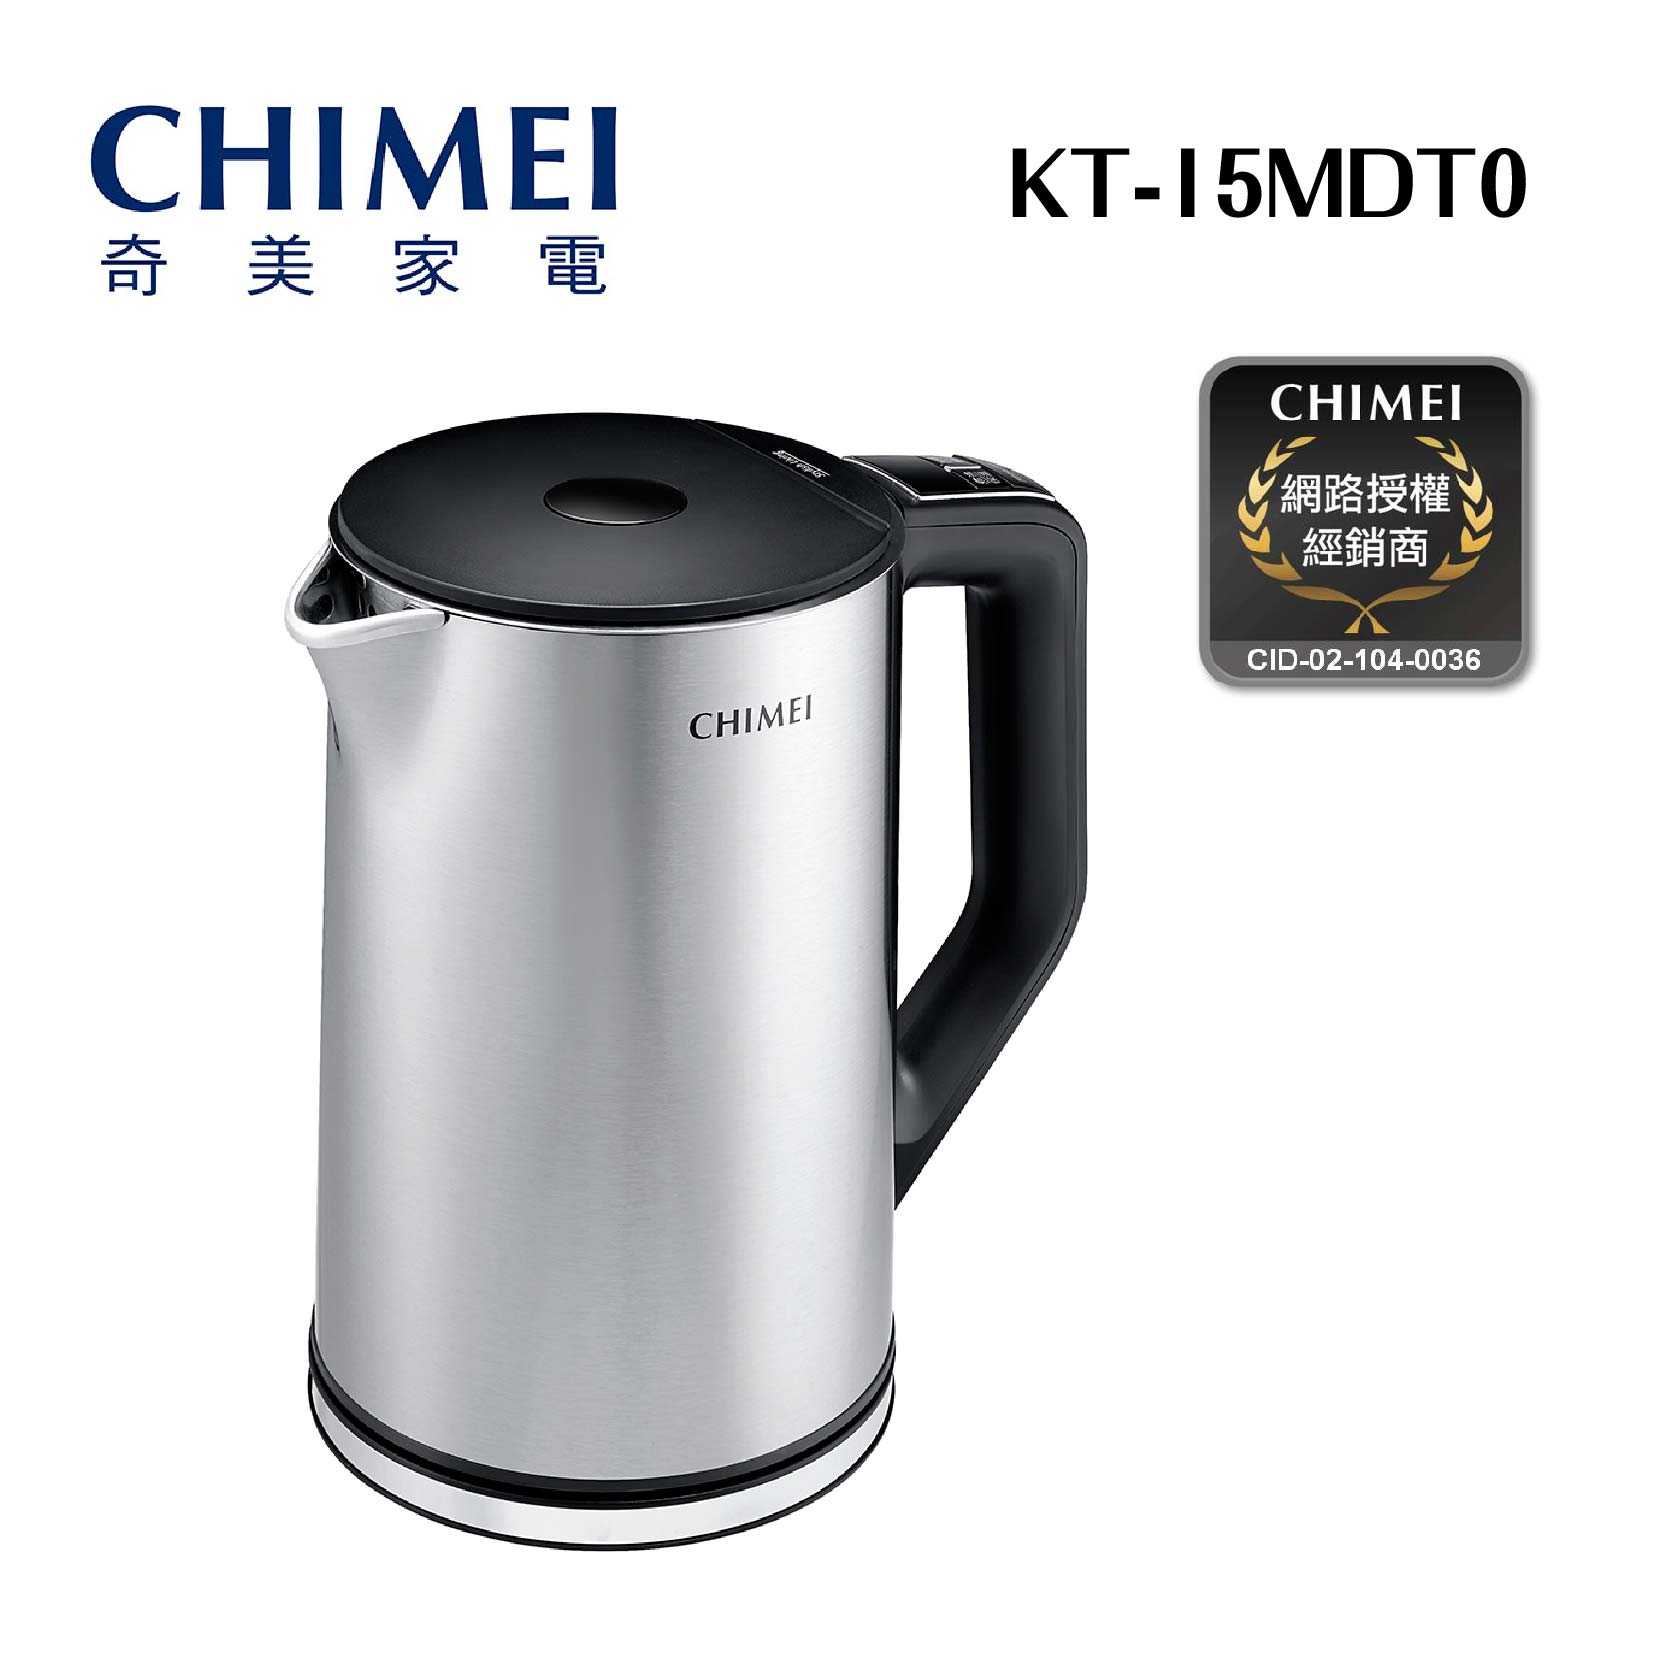 現貨『KT-15MDT0智能溫控304不鏽鋼快煮壺 1.5L』公司貨 奇美 CHIMEI